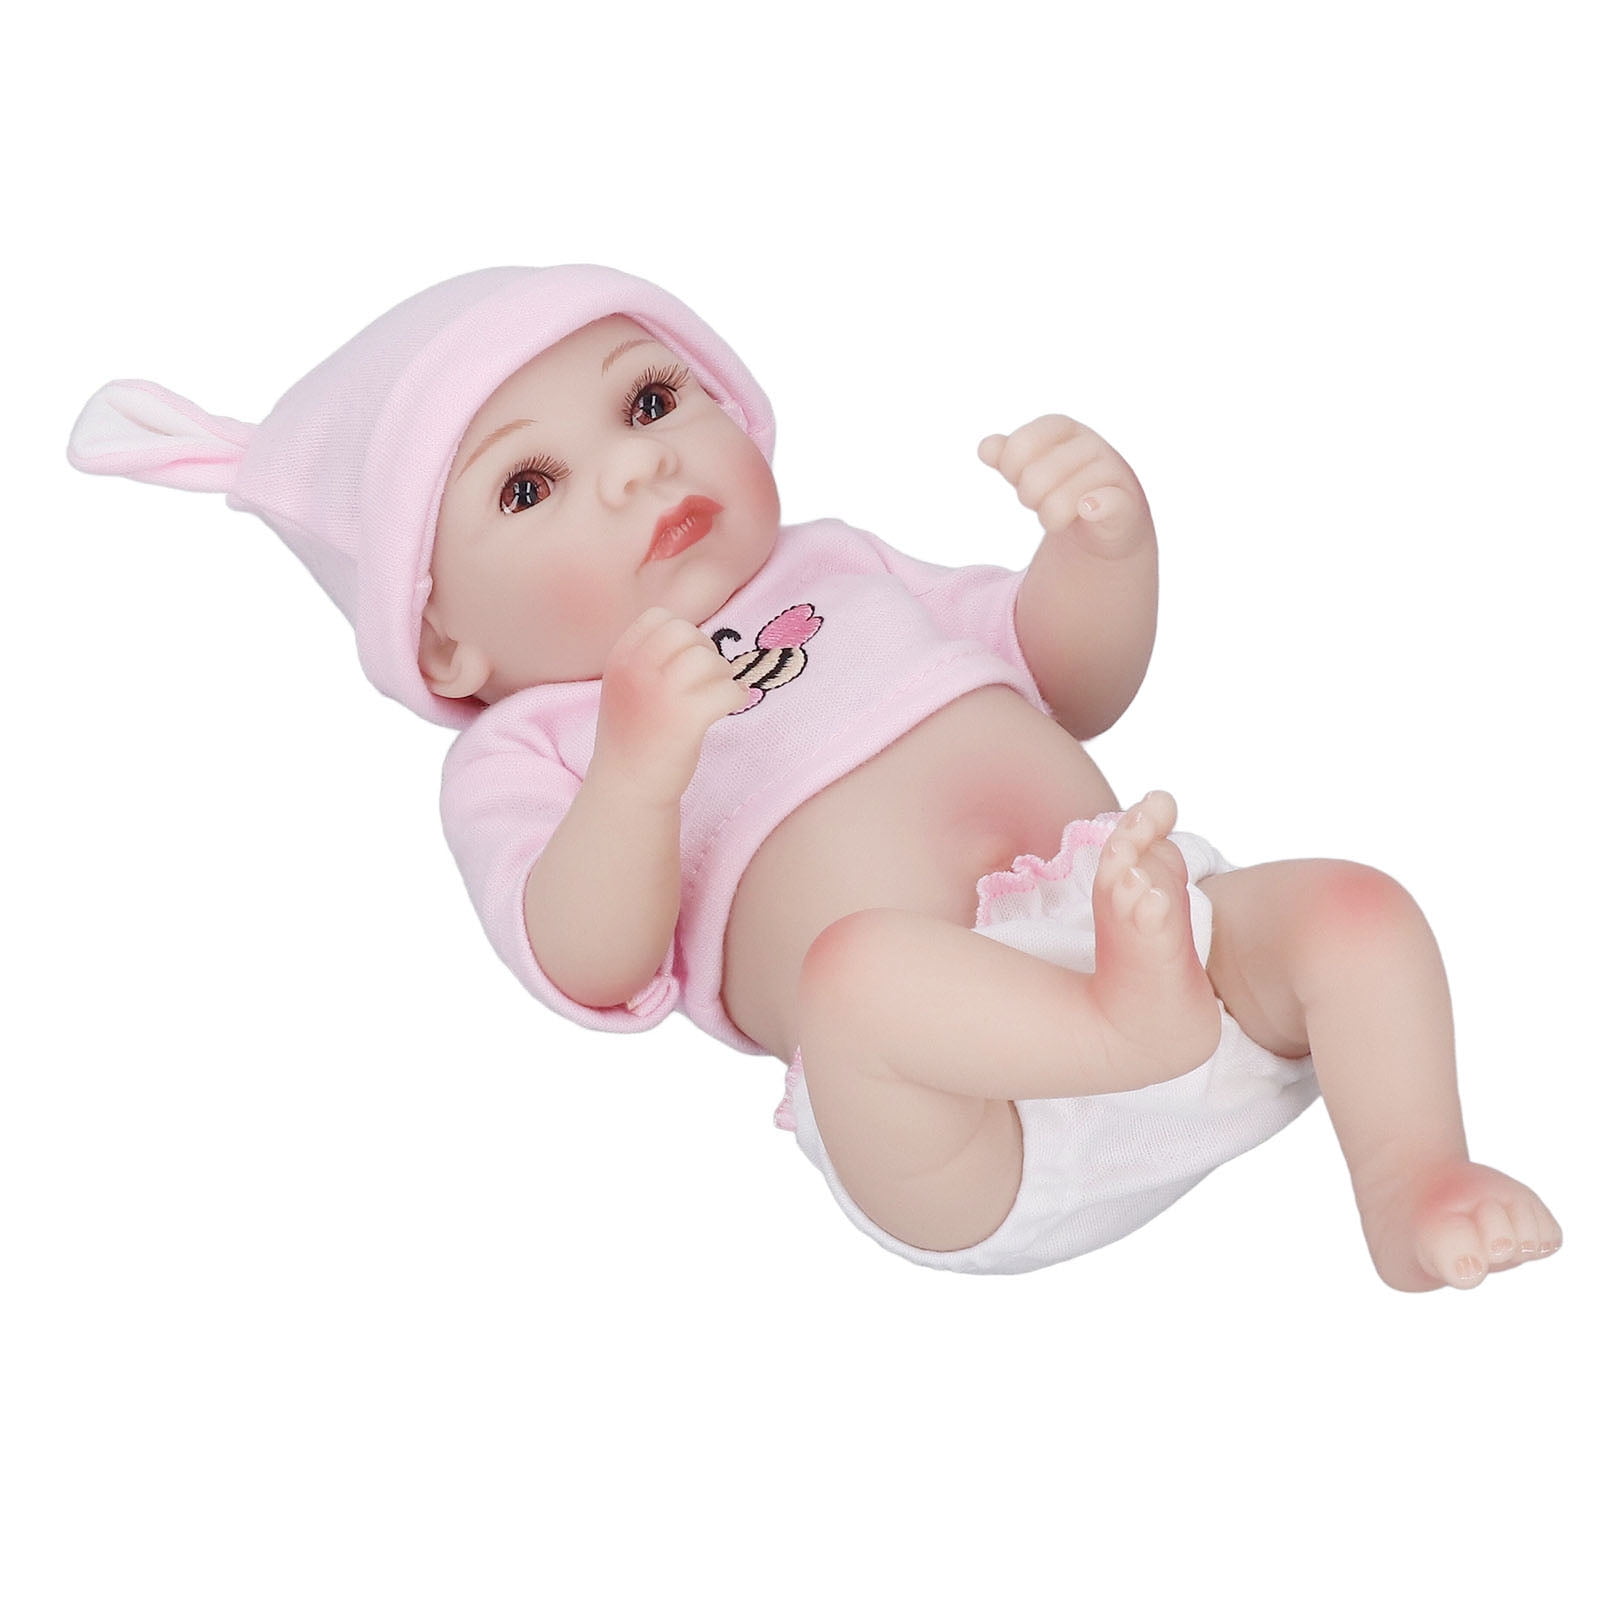 Pwshymi poupée simulée Poupée bébé fille simulée Silicone souple grande  sensation de main jouets poupee Fille aux yeux fermés